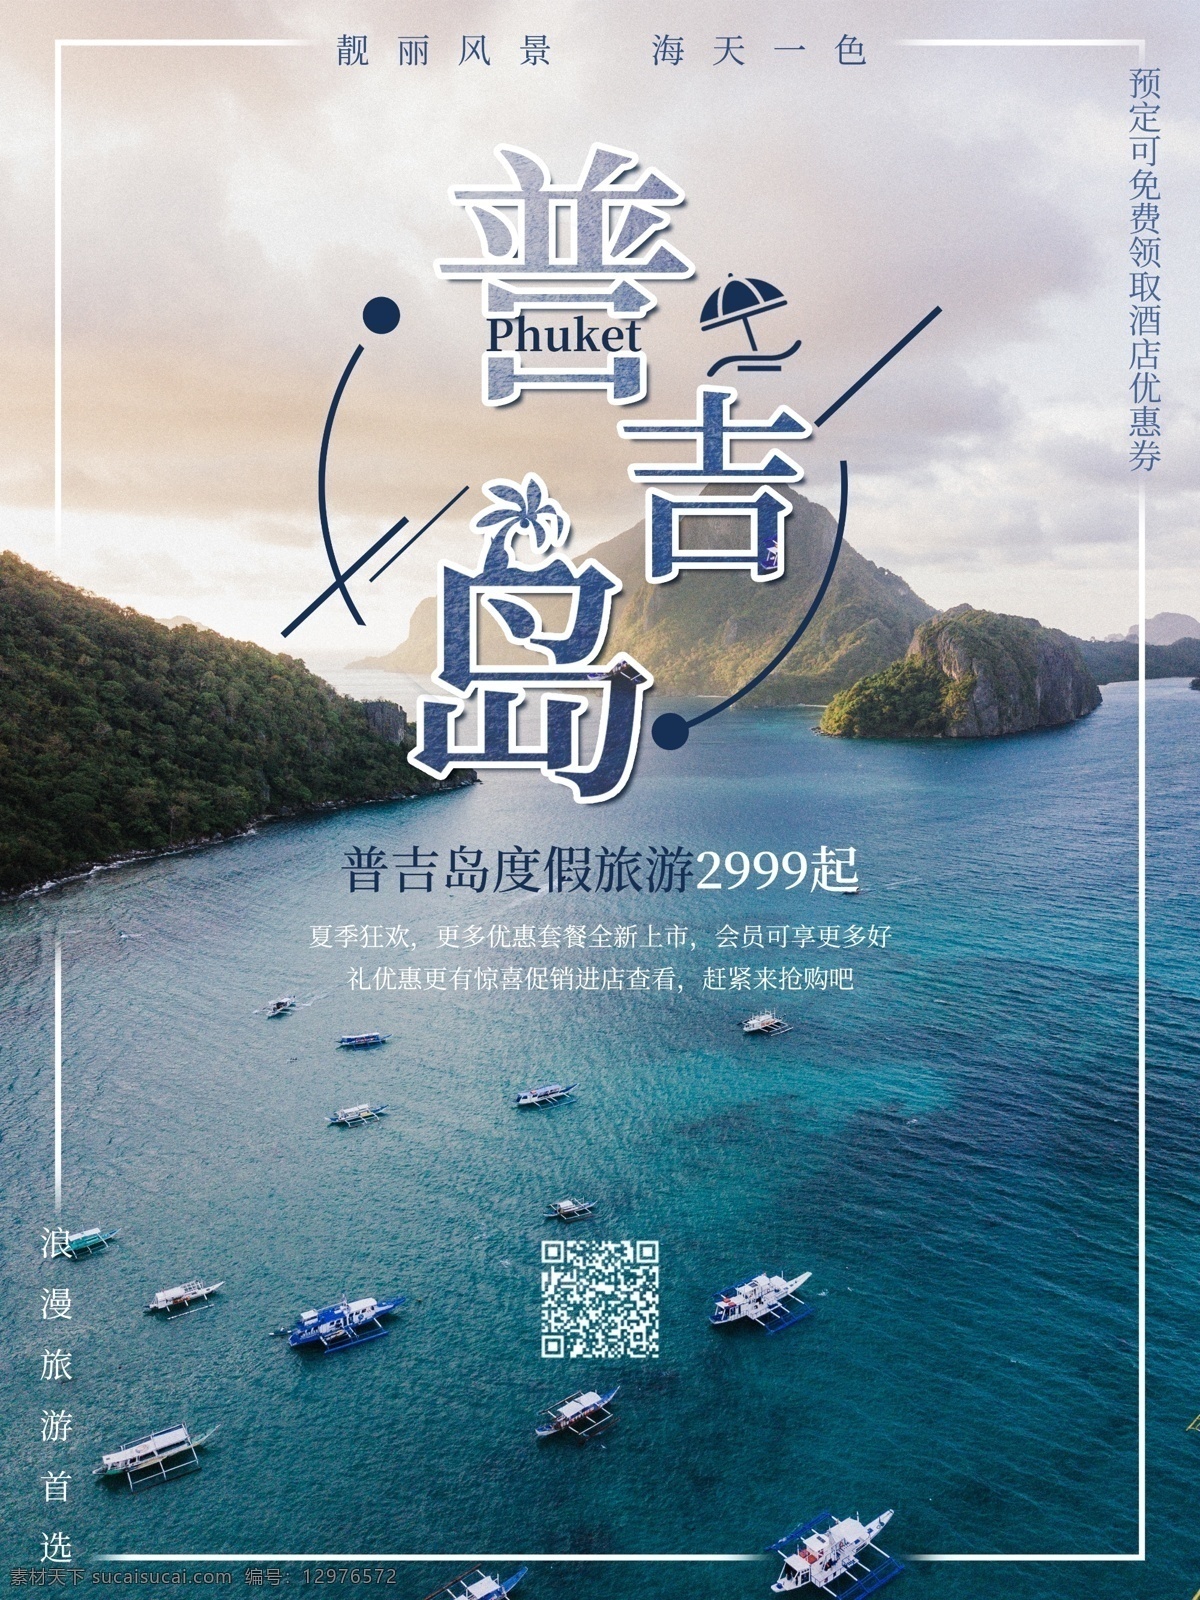 普吉岛 浪漫 度假旅游 海报 旅游 旅游海报 促销 宣传 度假 假期 靓丽风景 海岛 海 旅行团